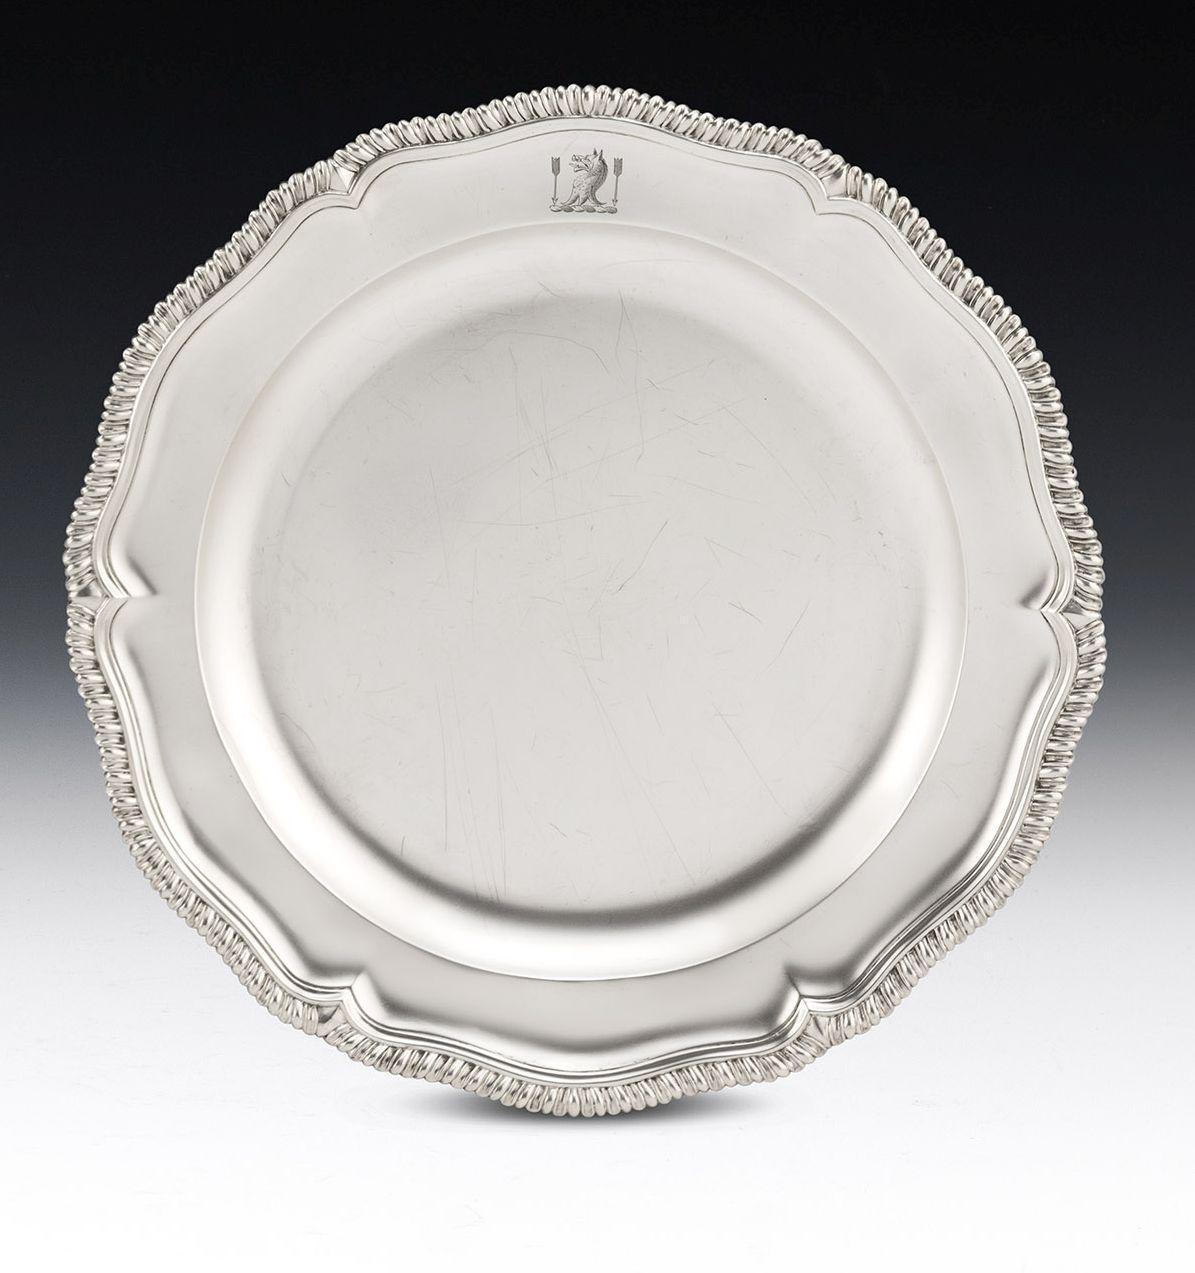 Ein extrem feines Paar von George II Second Course Dishes, hergestellt in London im Jahr 1754 von John Jacobs

Das Geschirr wurde 1754 in London von dem sehr guten Silberschmied Jean, auch bekannt als John Jacobs, hergestellt. Die Schalen haben eine